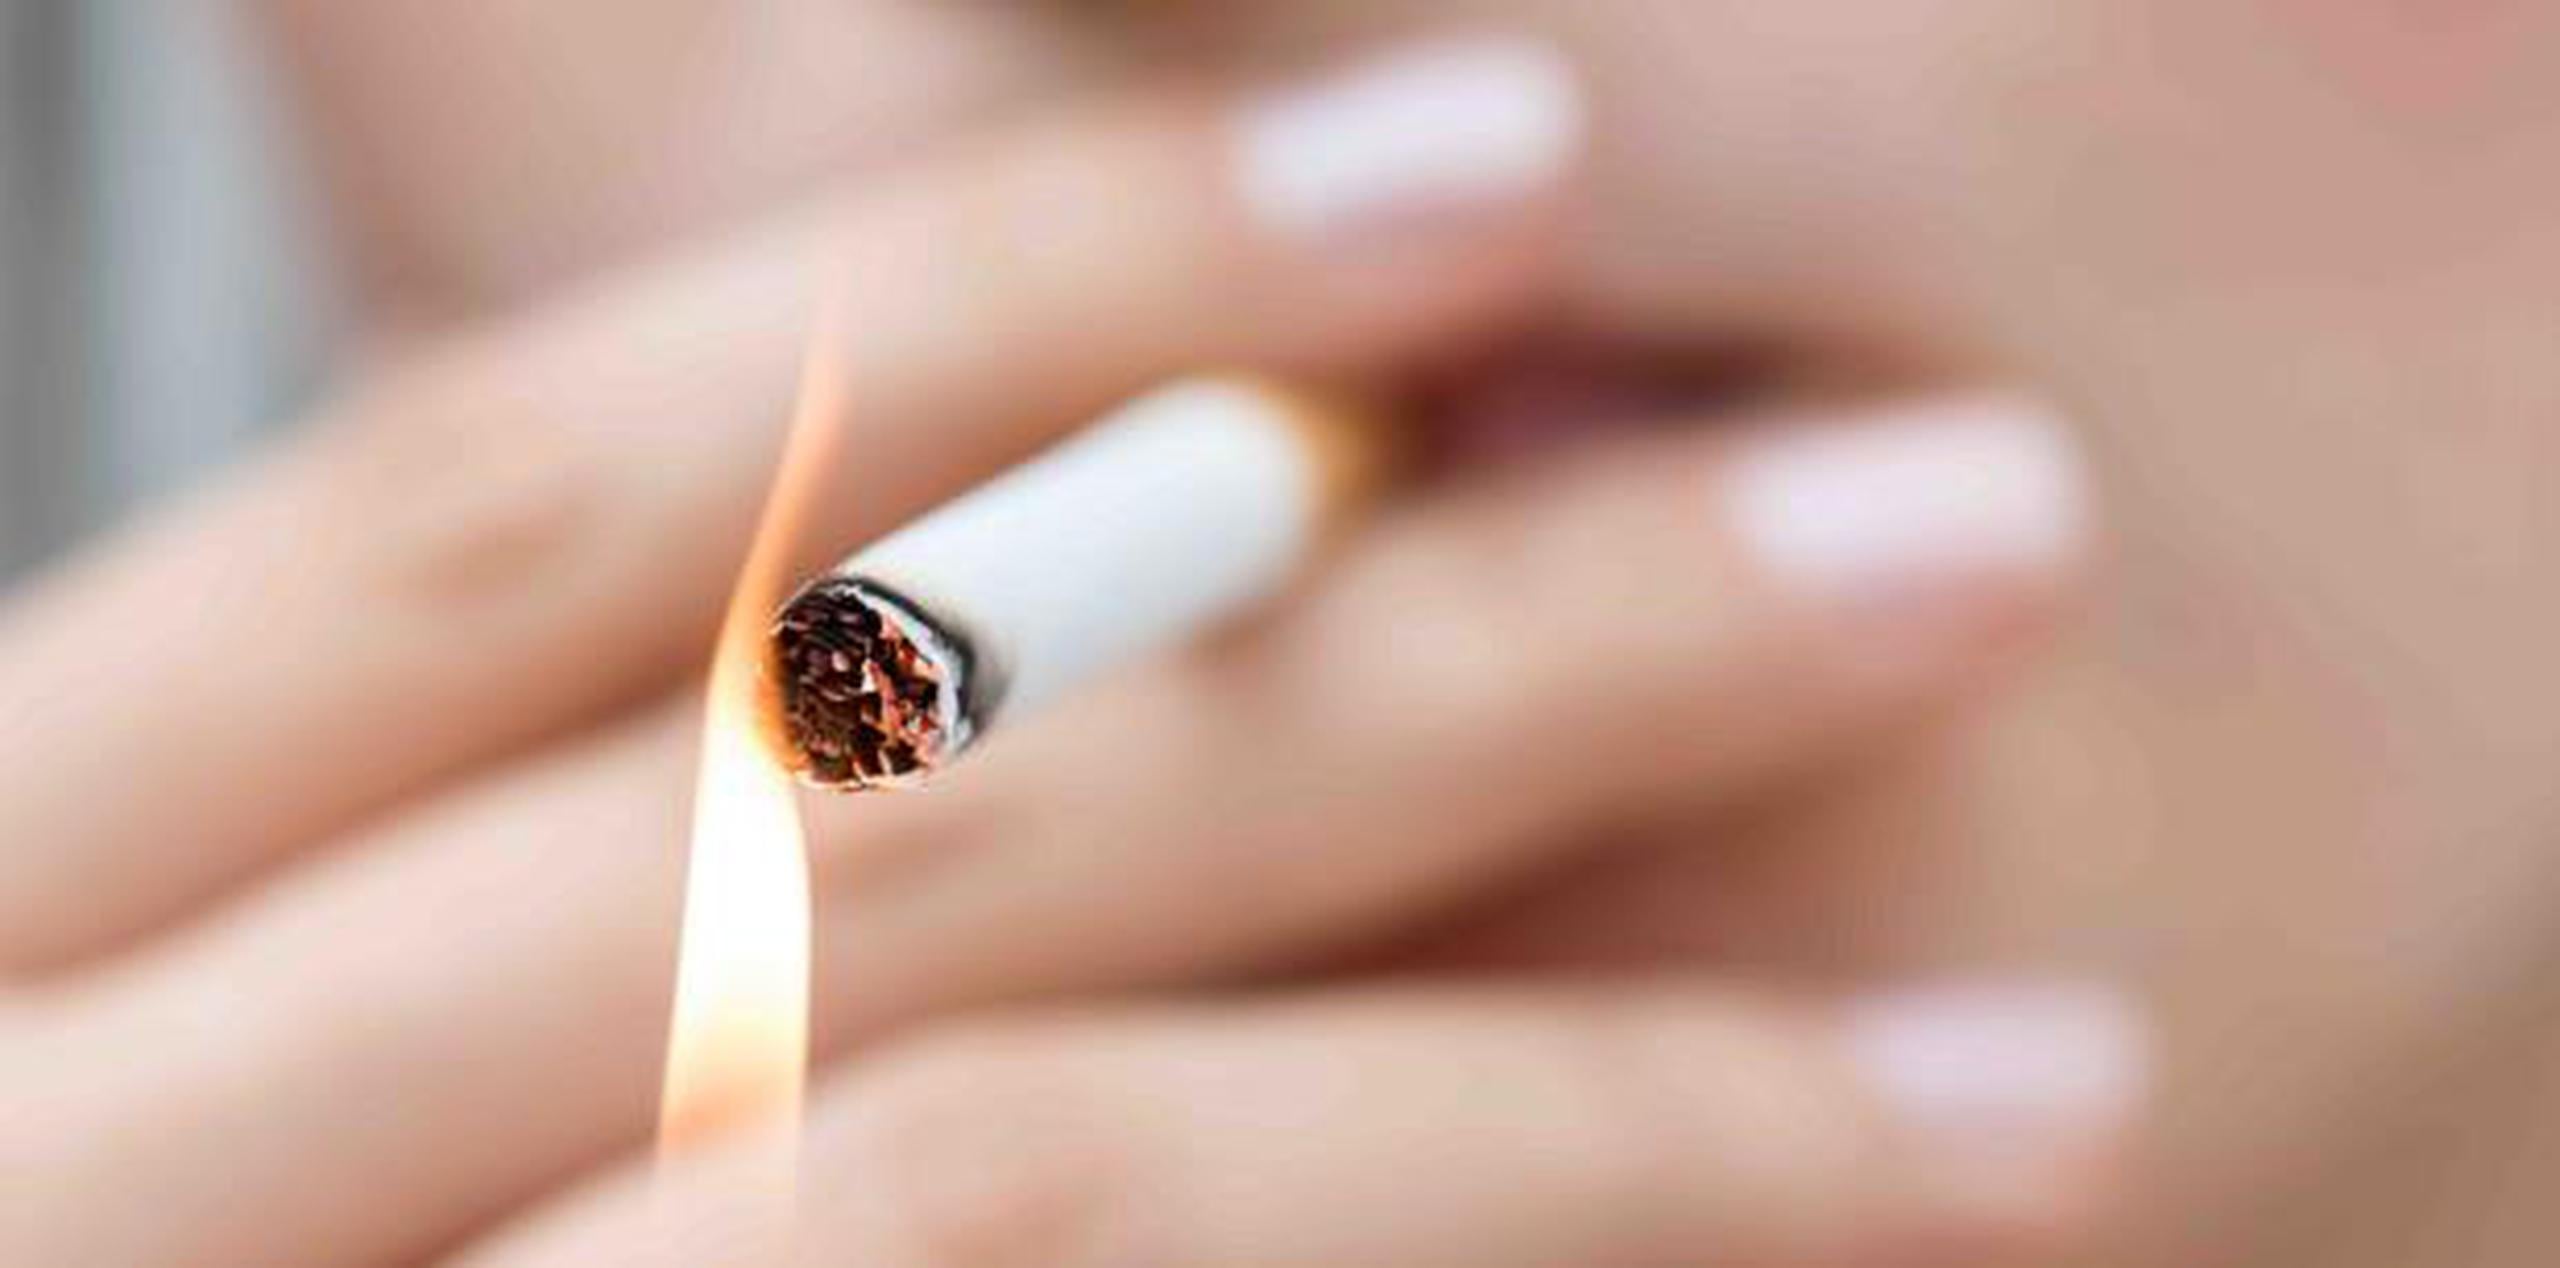 Los cigarrillos tienen aproximadamente 4,000 químicos. (Shutterstock)